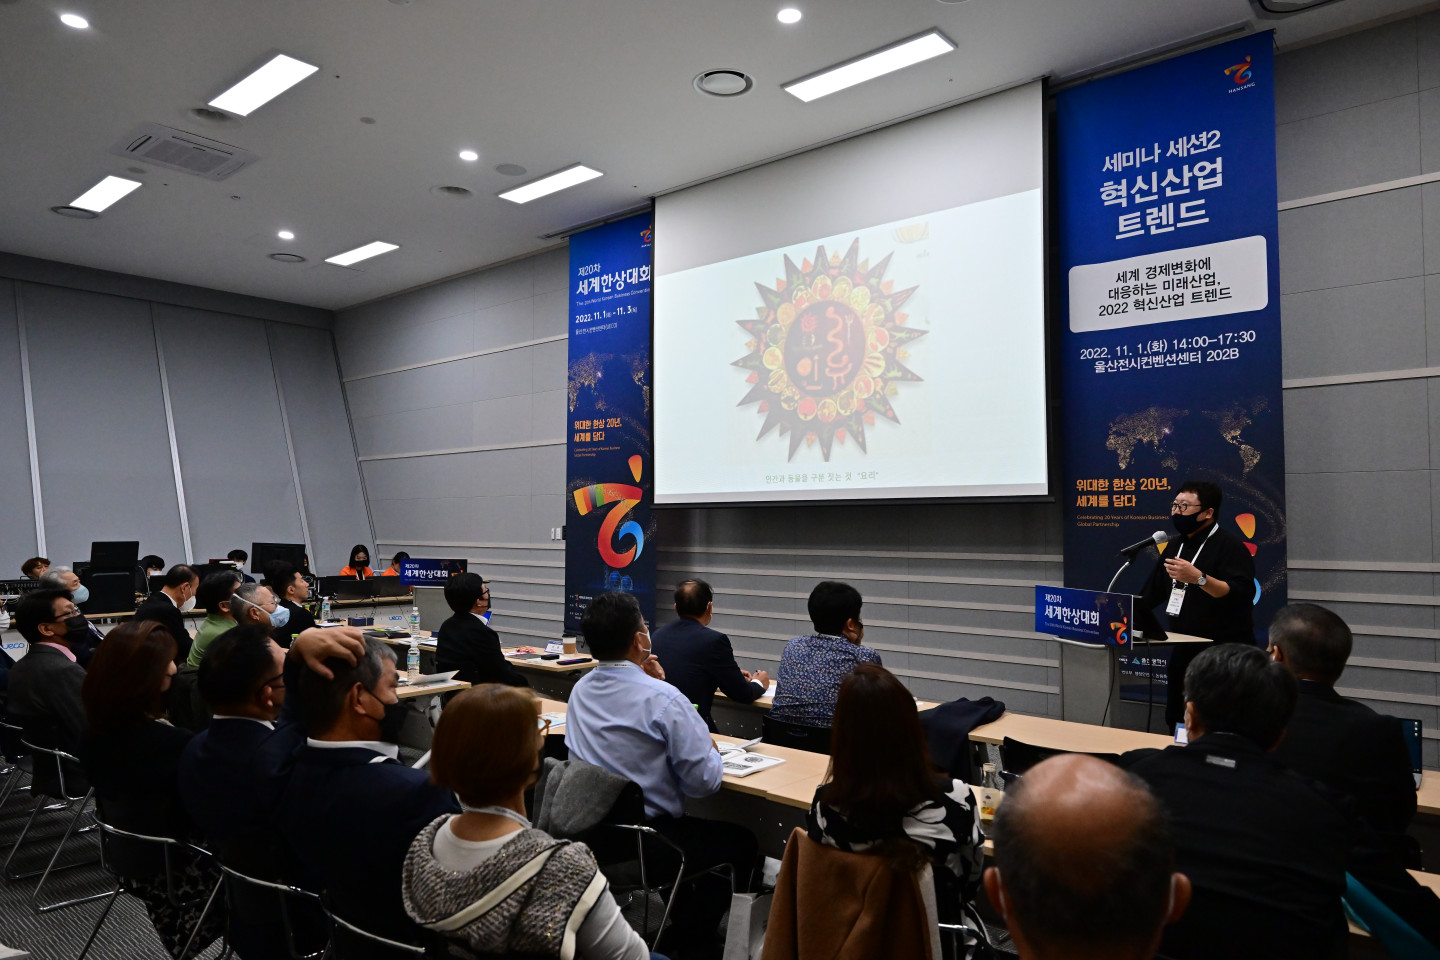 Корейские трейдеры, которые посетили семинар, чтобы понять глобальные экономические тенденции и развить глобальные возможности